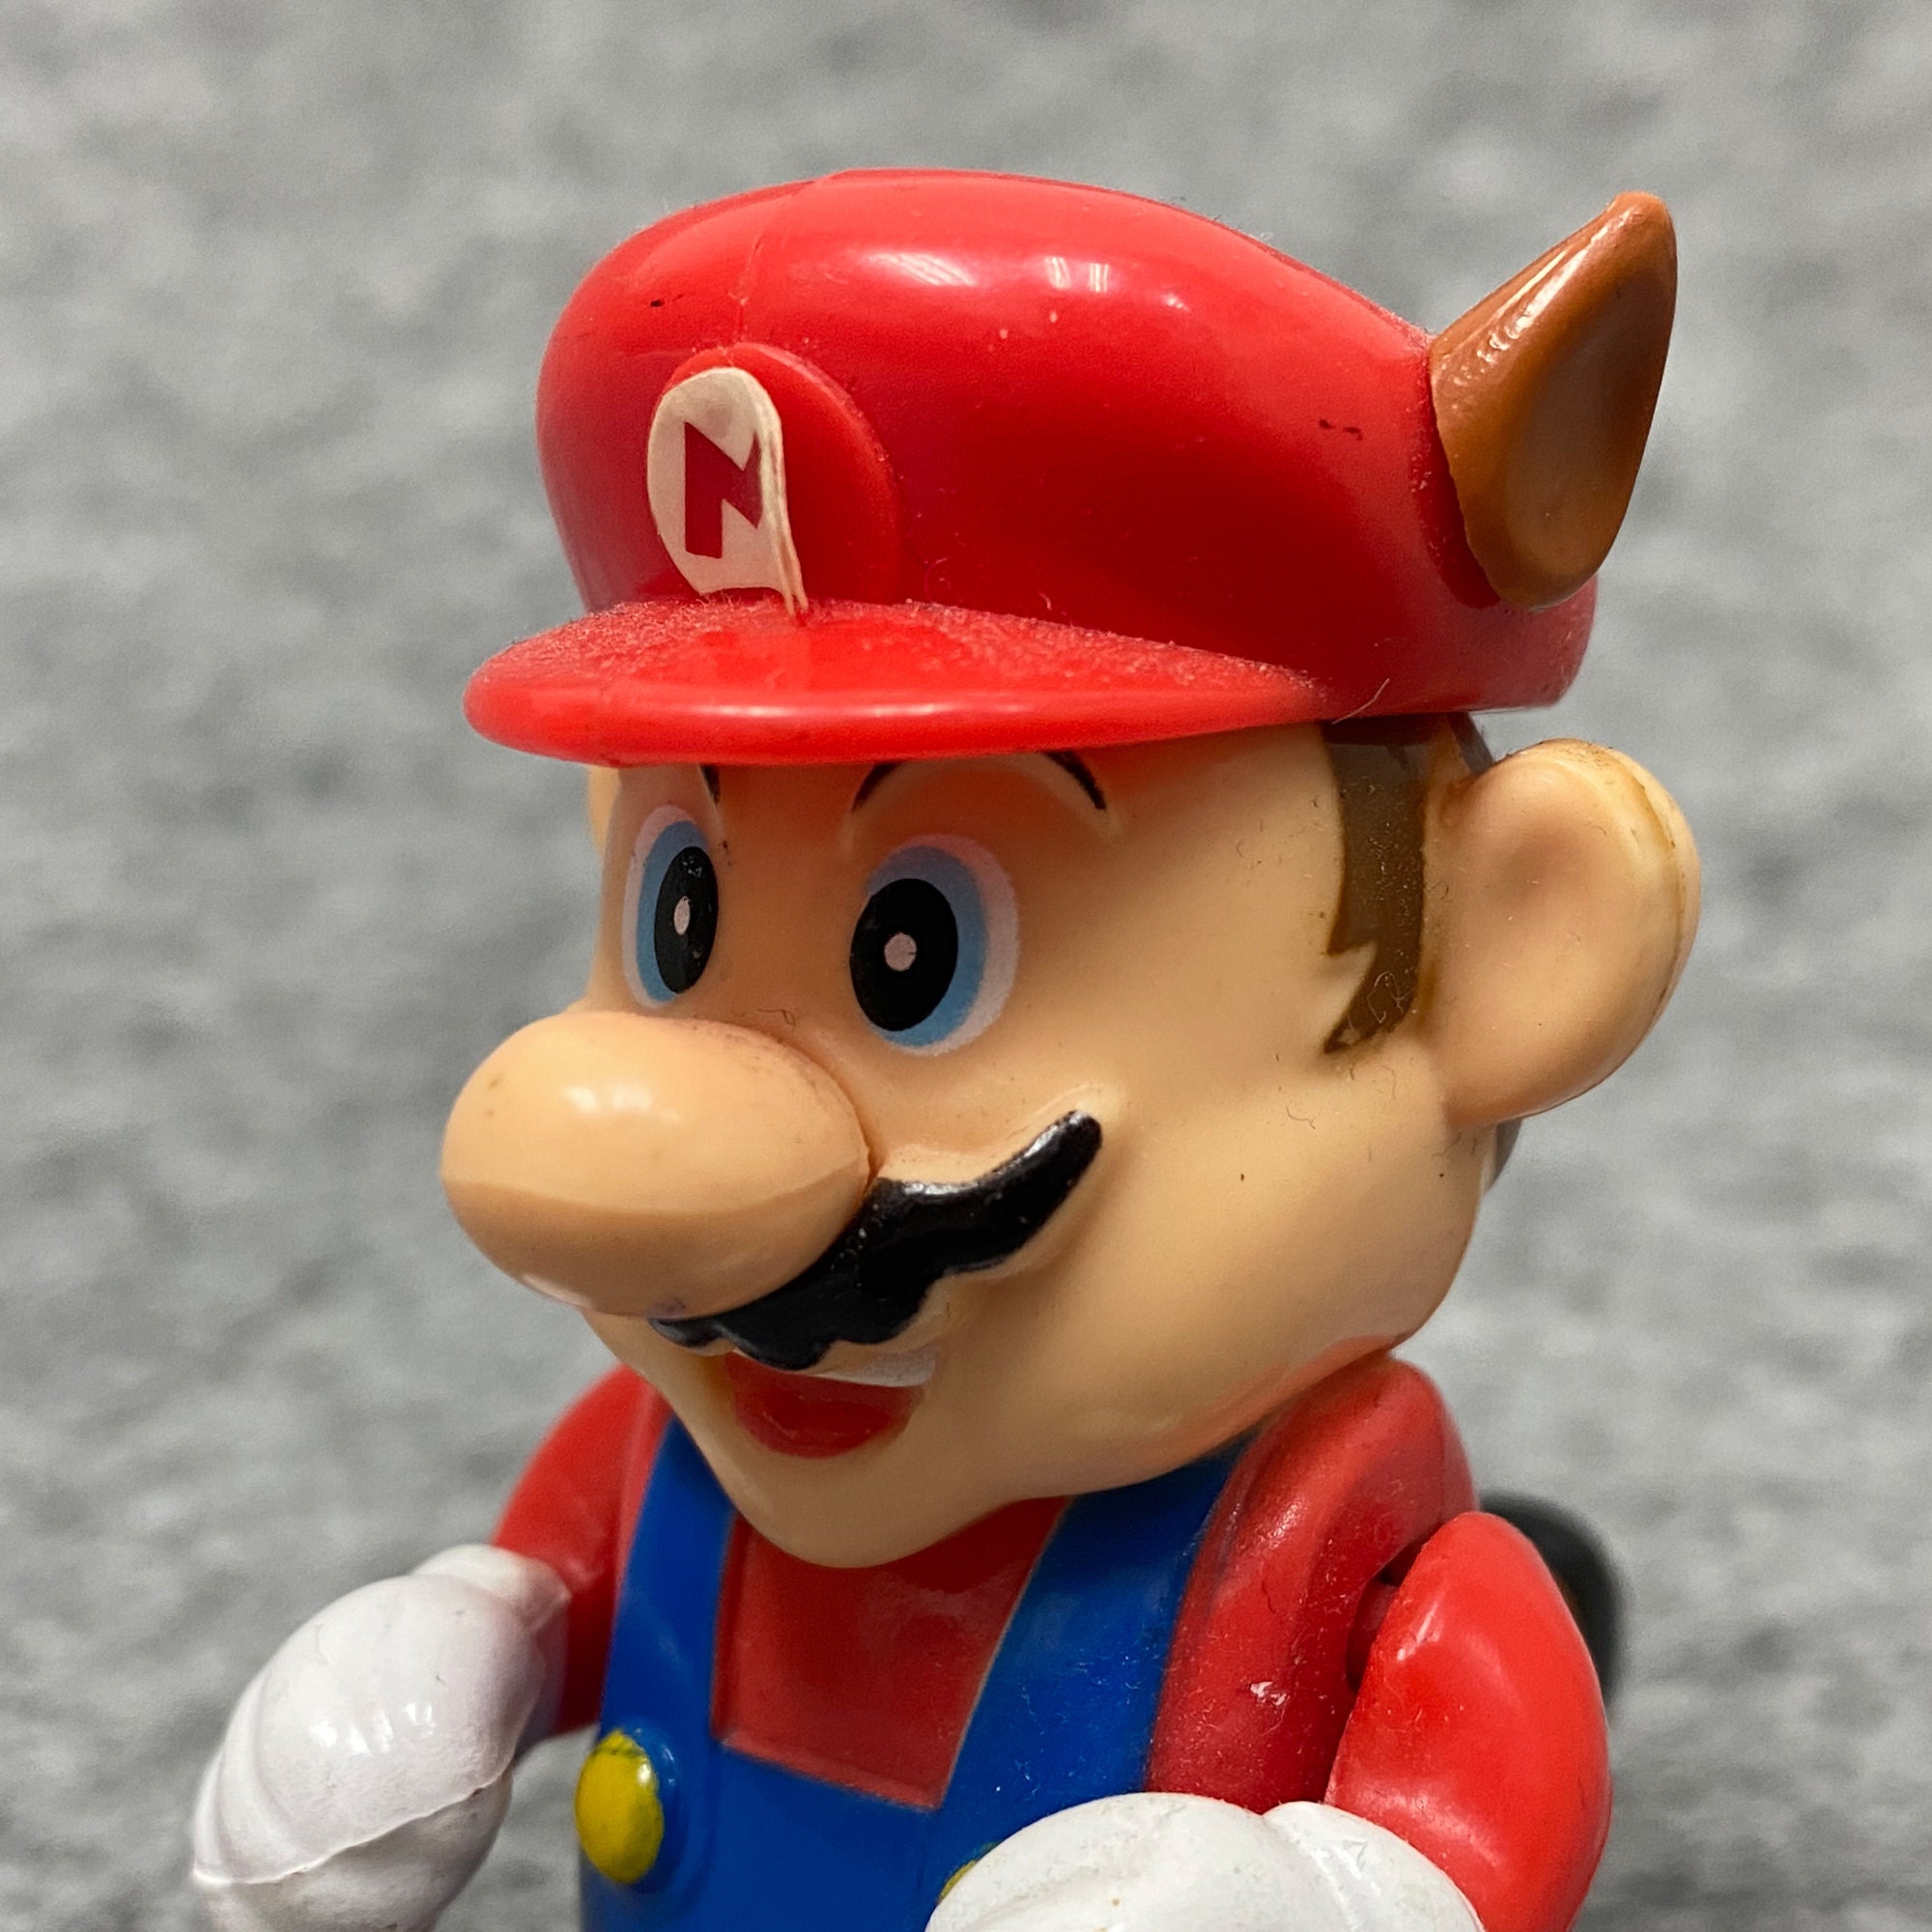 Super Mario World Mario & Yoshi Rare Figure Keychain 1993 Nintendo SNES NES